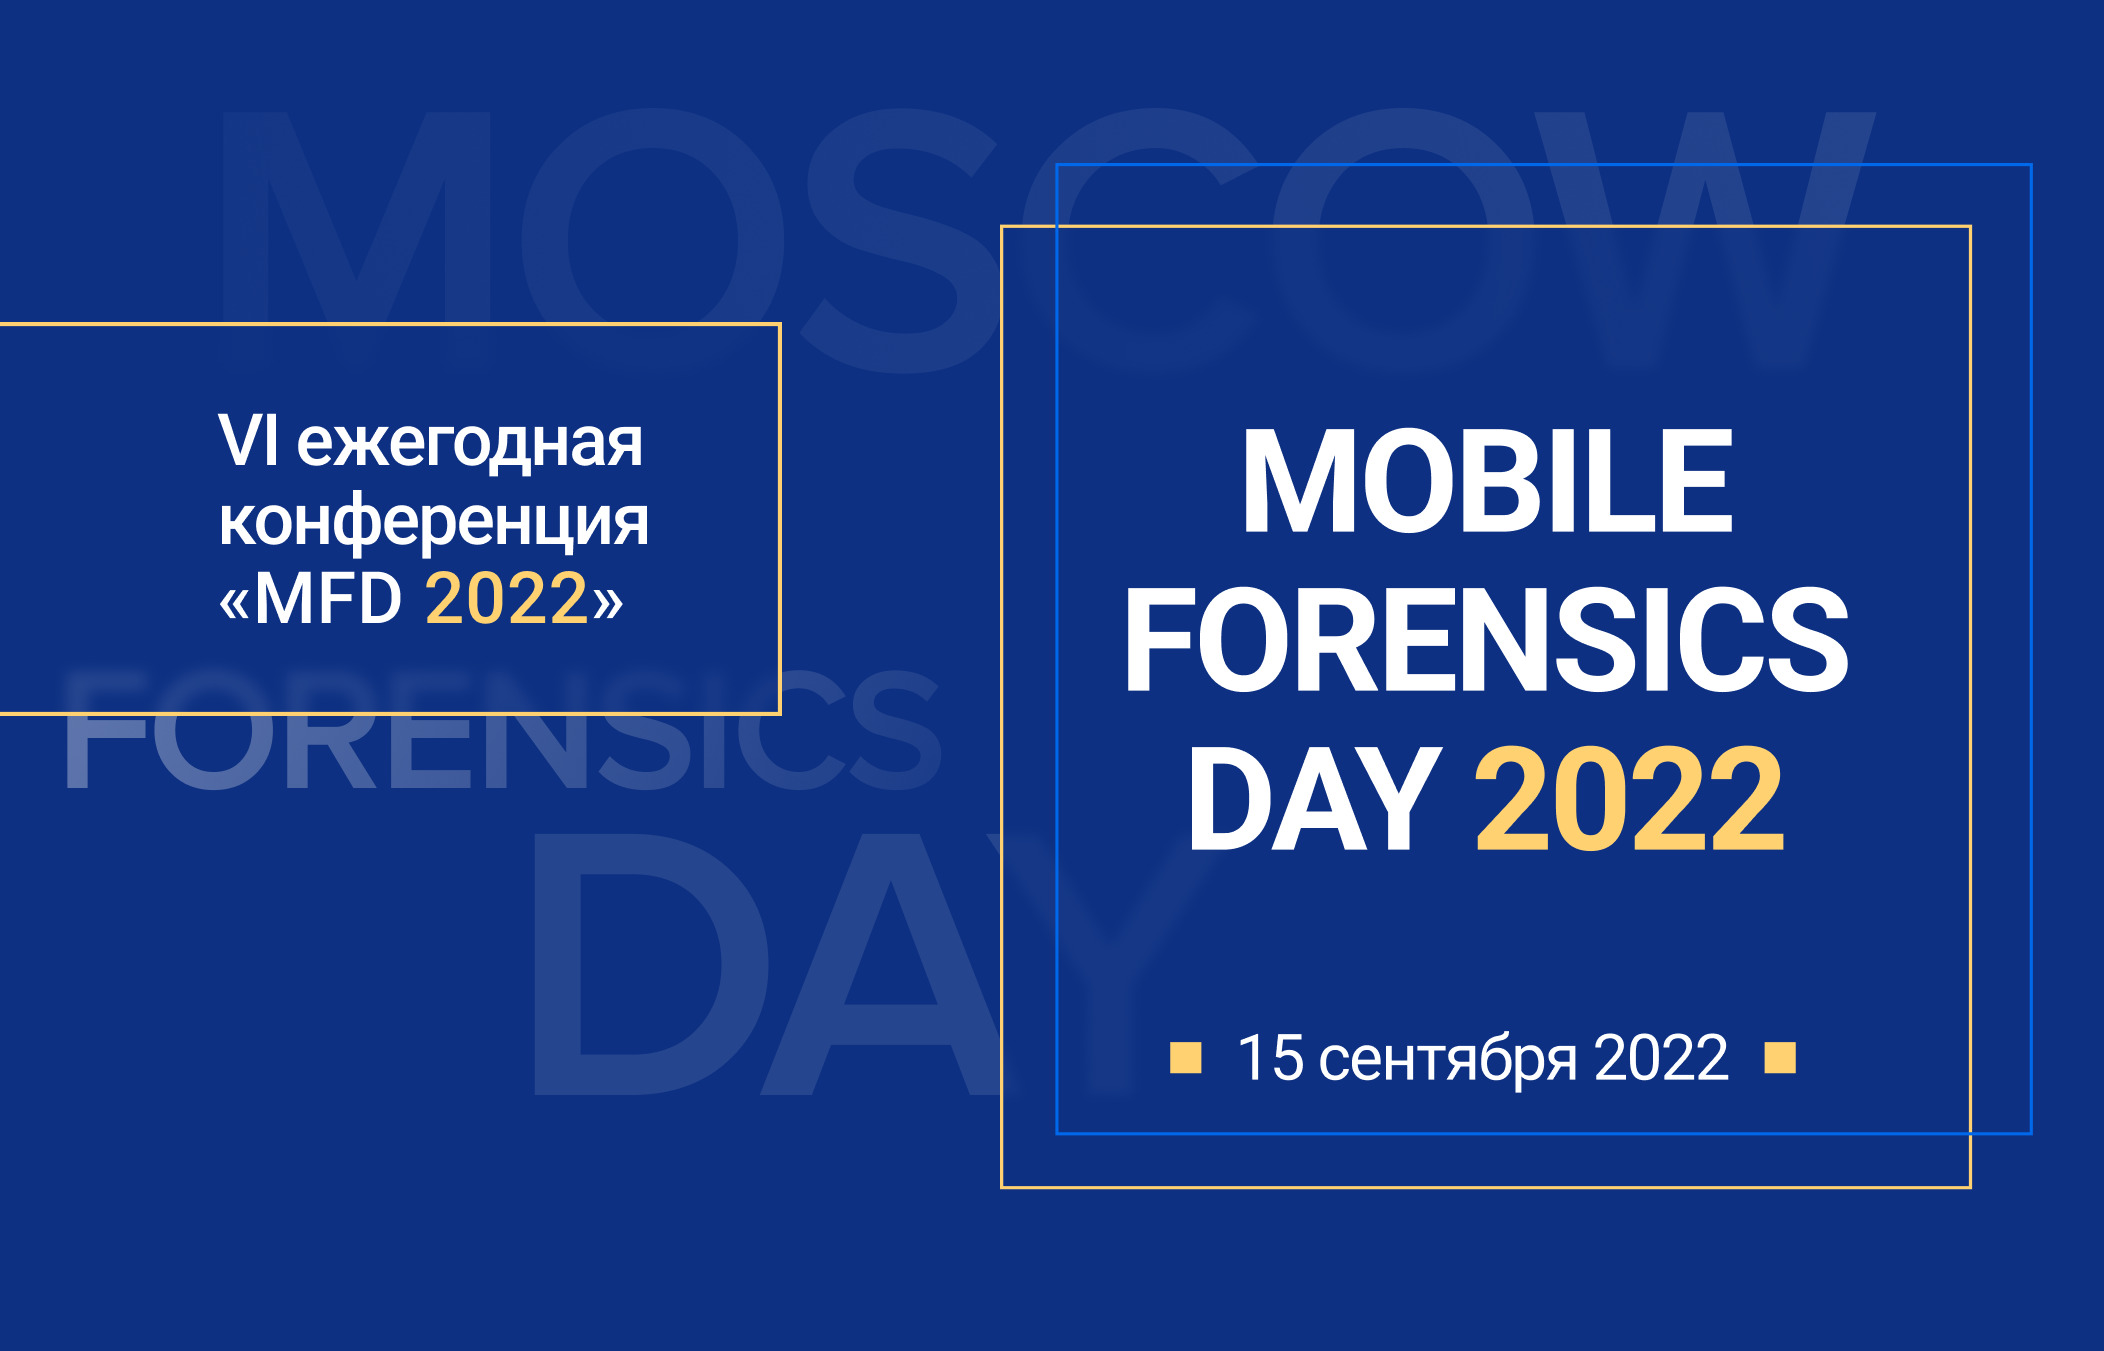 Опубликована программа «MOBILE FORENSICS DAY 2022»!